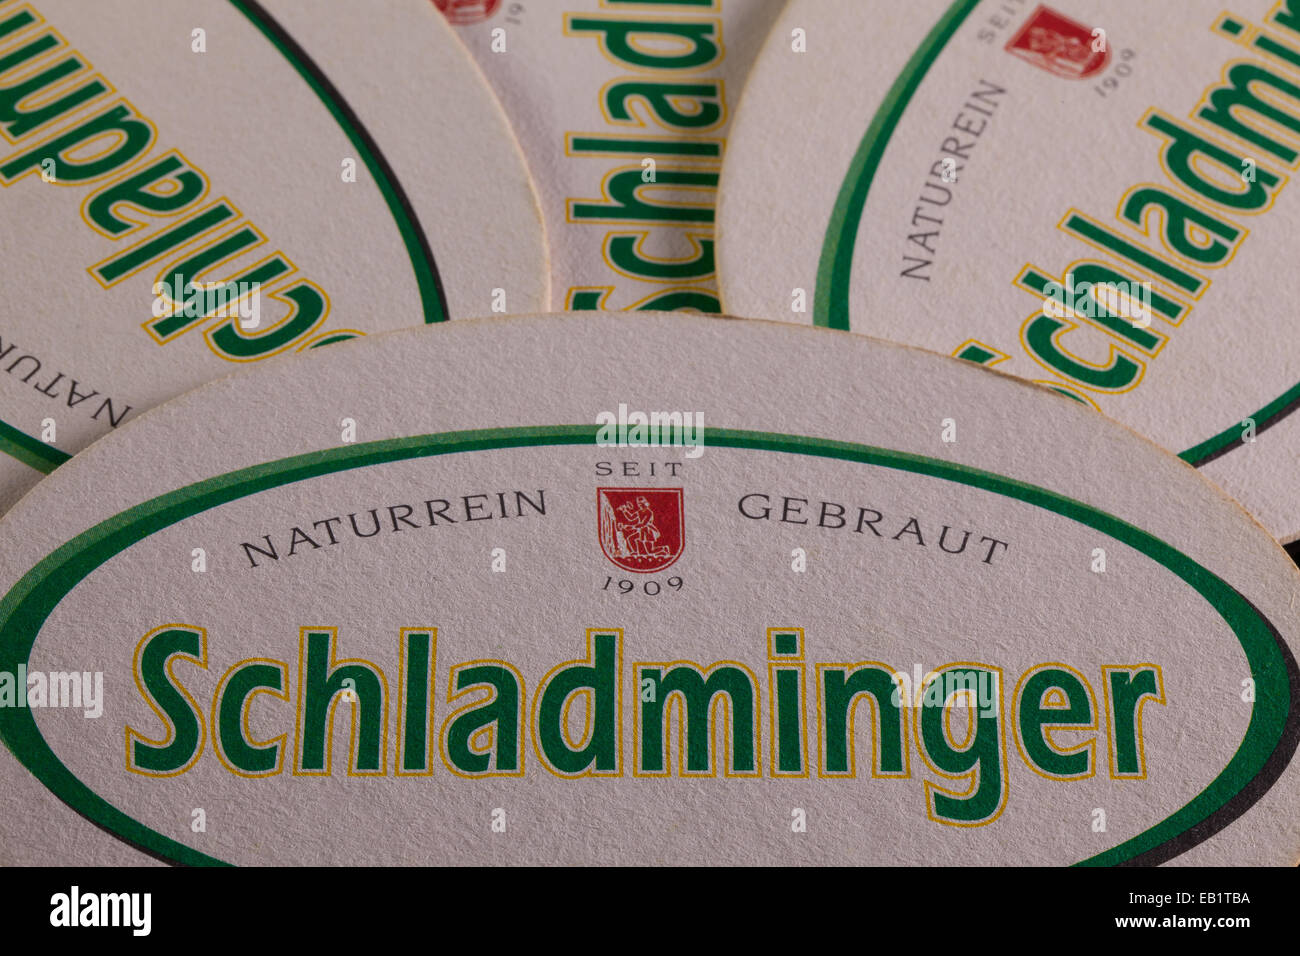 AUSTRIA, Schladming - Giugno 6, 2014: Beermats da Schladminger birra.Schladminger birra ha un rinfrescante pieno aroma di malto con un s Foto Stock